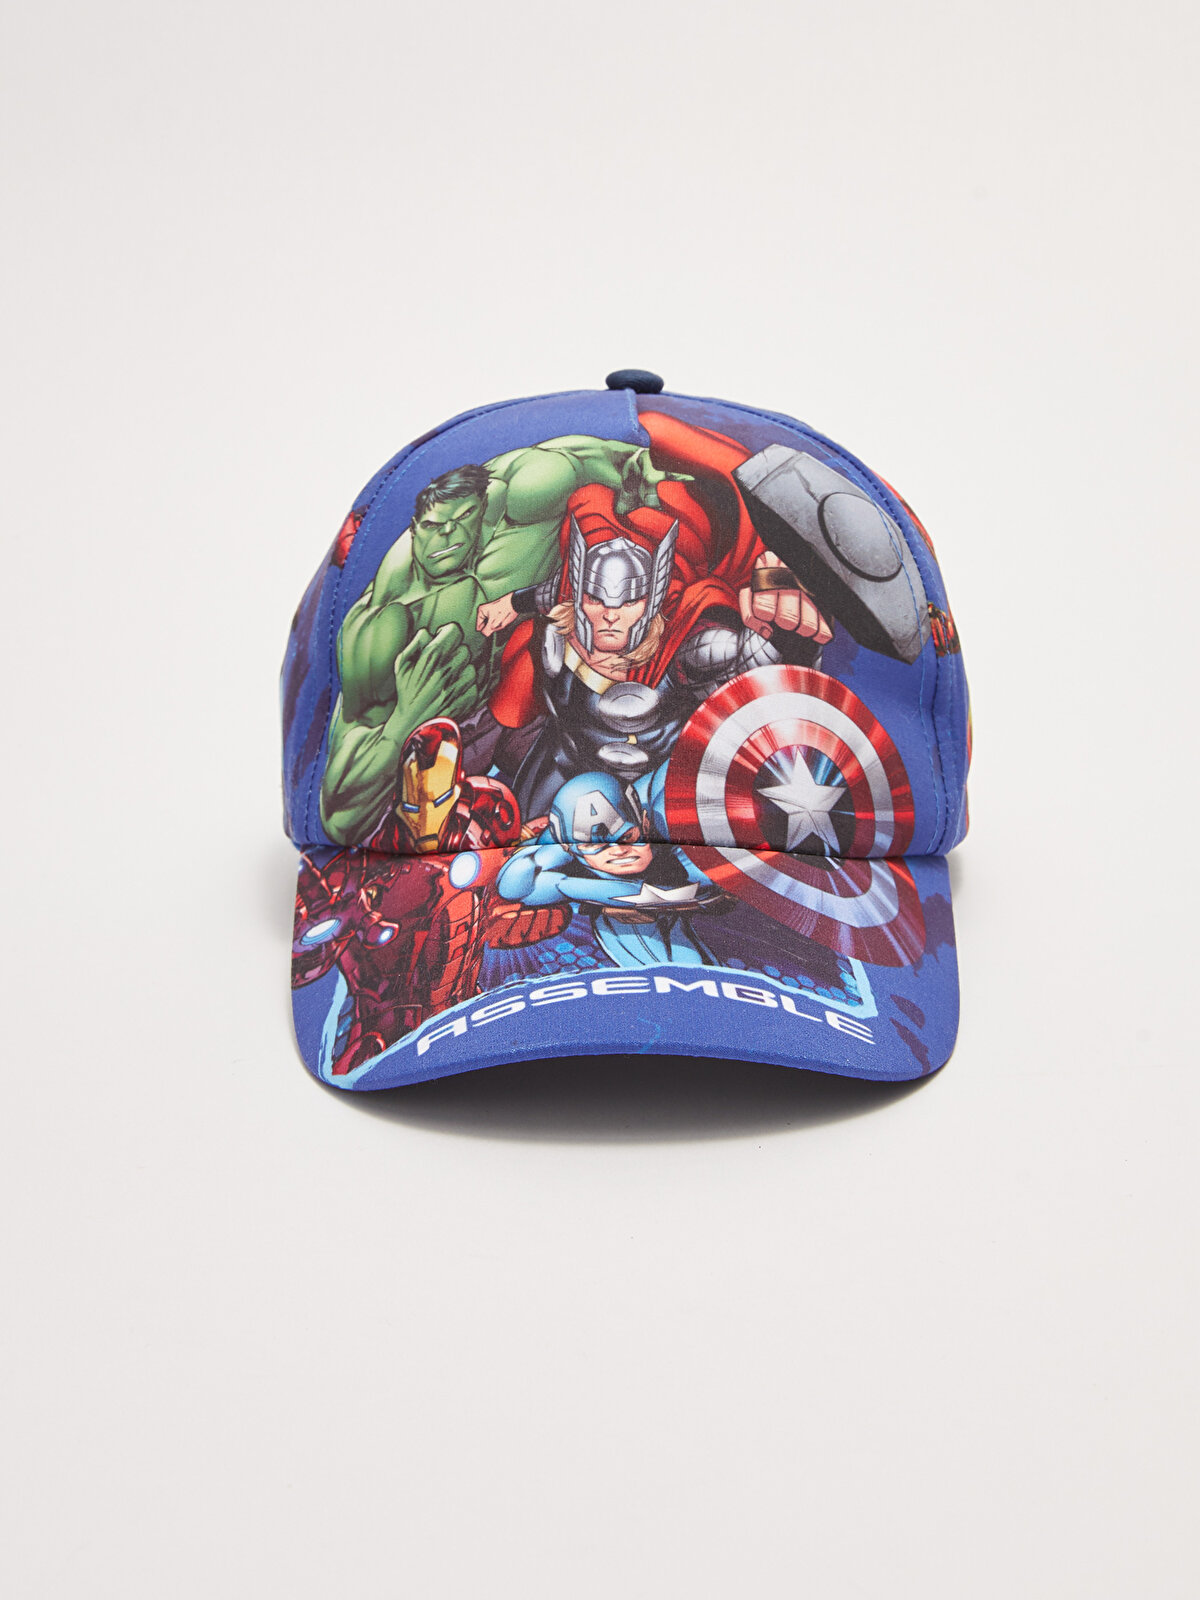 Avengers Licensed Boy Cap Hat -S23688Z4-F9C - S23688Z4-F9C - LC Waikiki